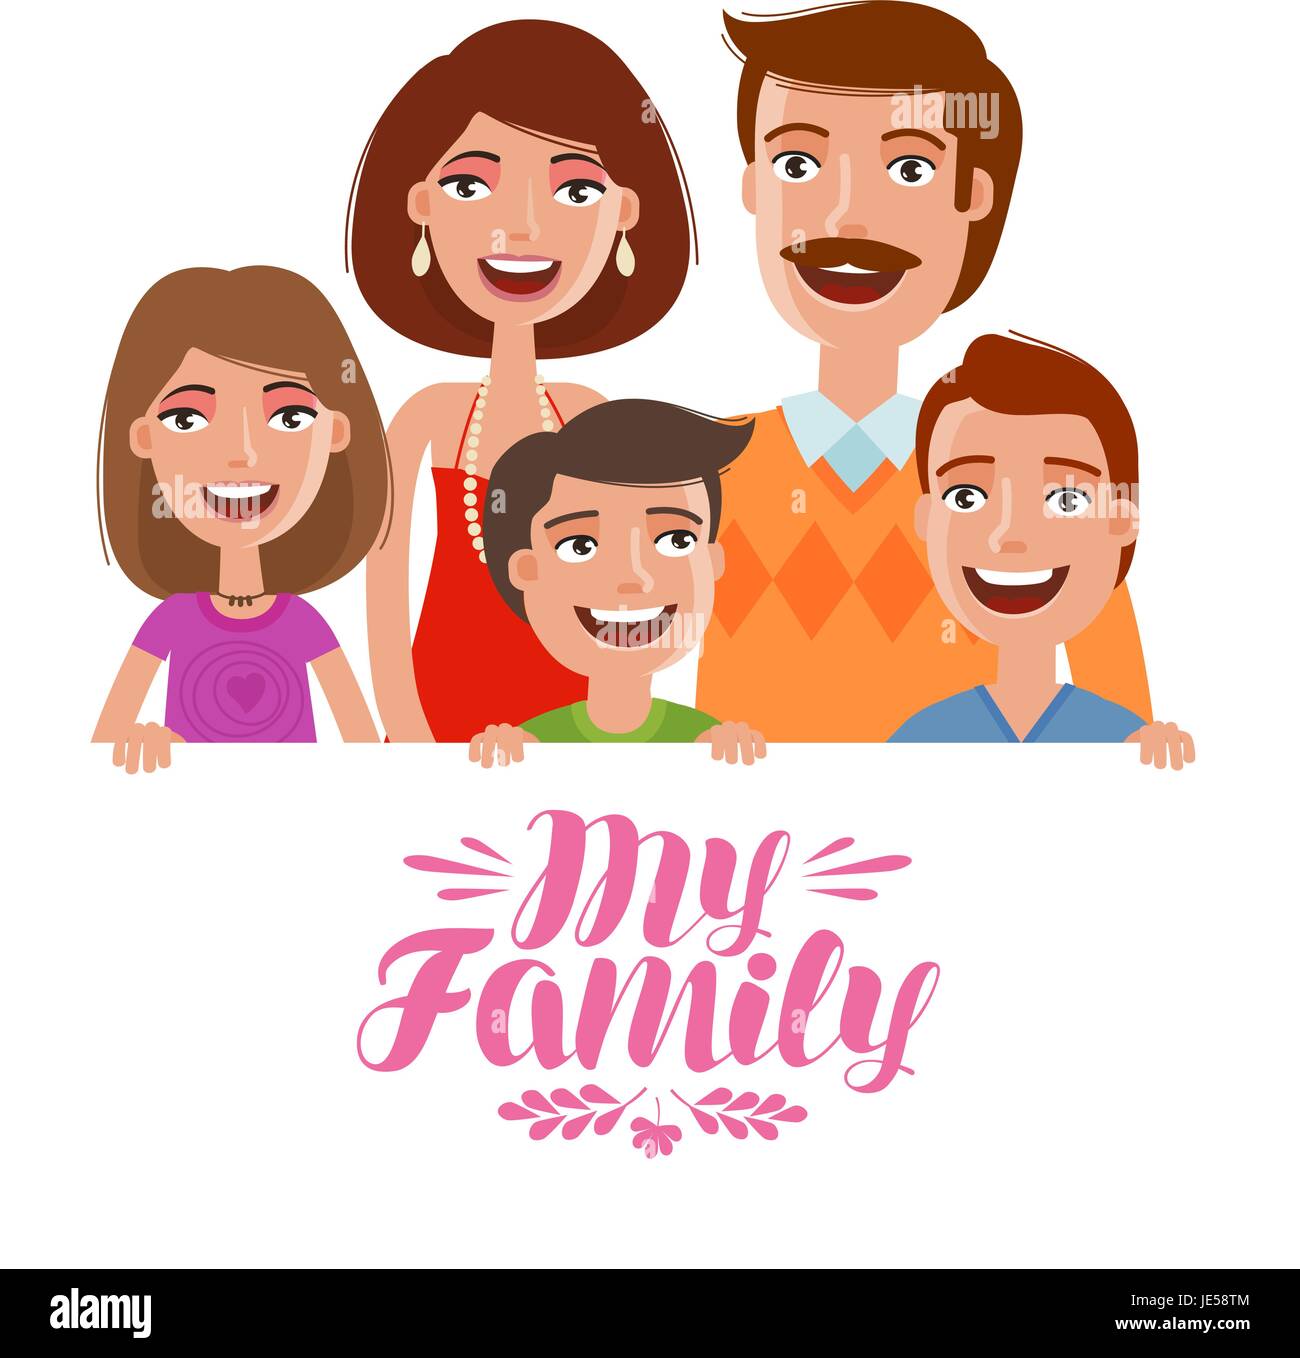 Glückliche Familie. Menschen, Eltern und Kinder Konzept. Cartoon-Vektor-illustration Stock Vektor